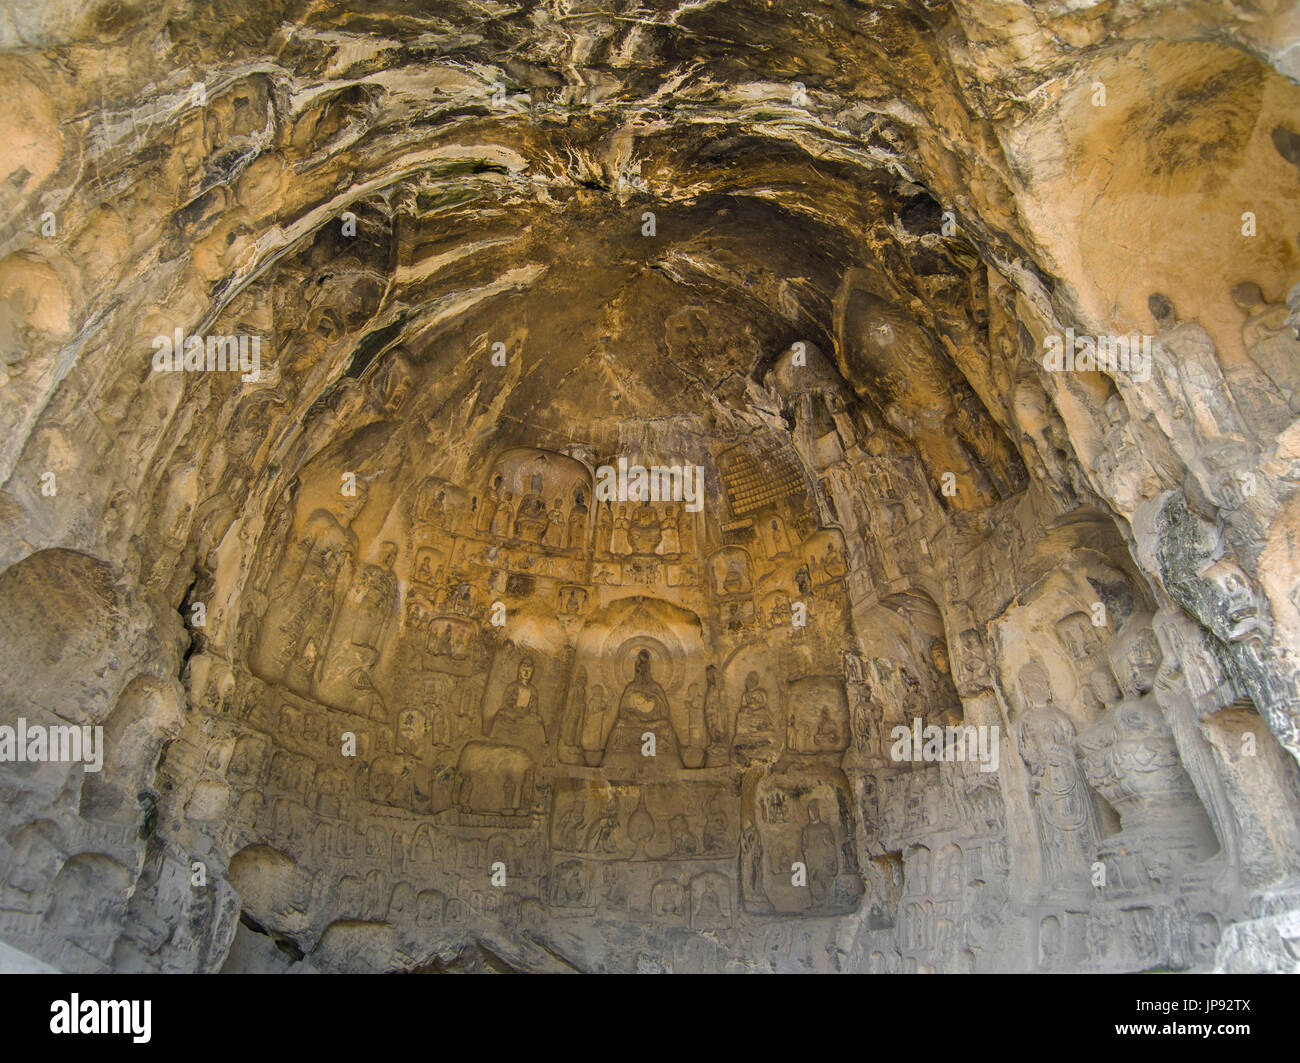 Le Groupe des niches, mur principal d'Laolongdong, Grotte Grottes de Longmen, Luoyang, Chine Banque D'Images